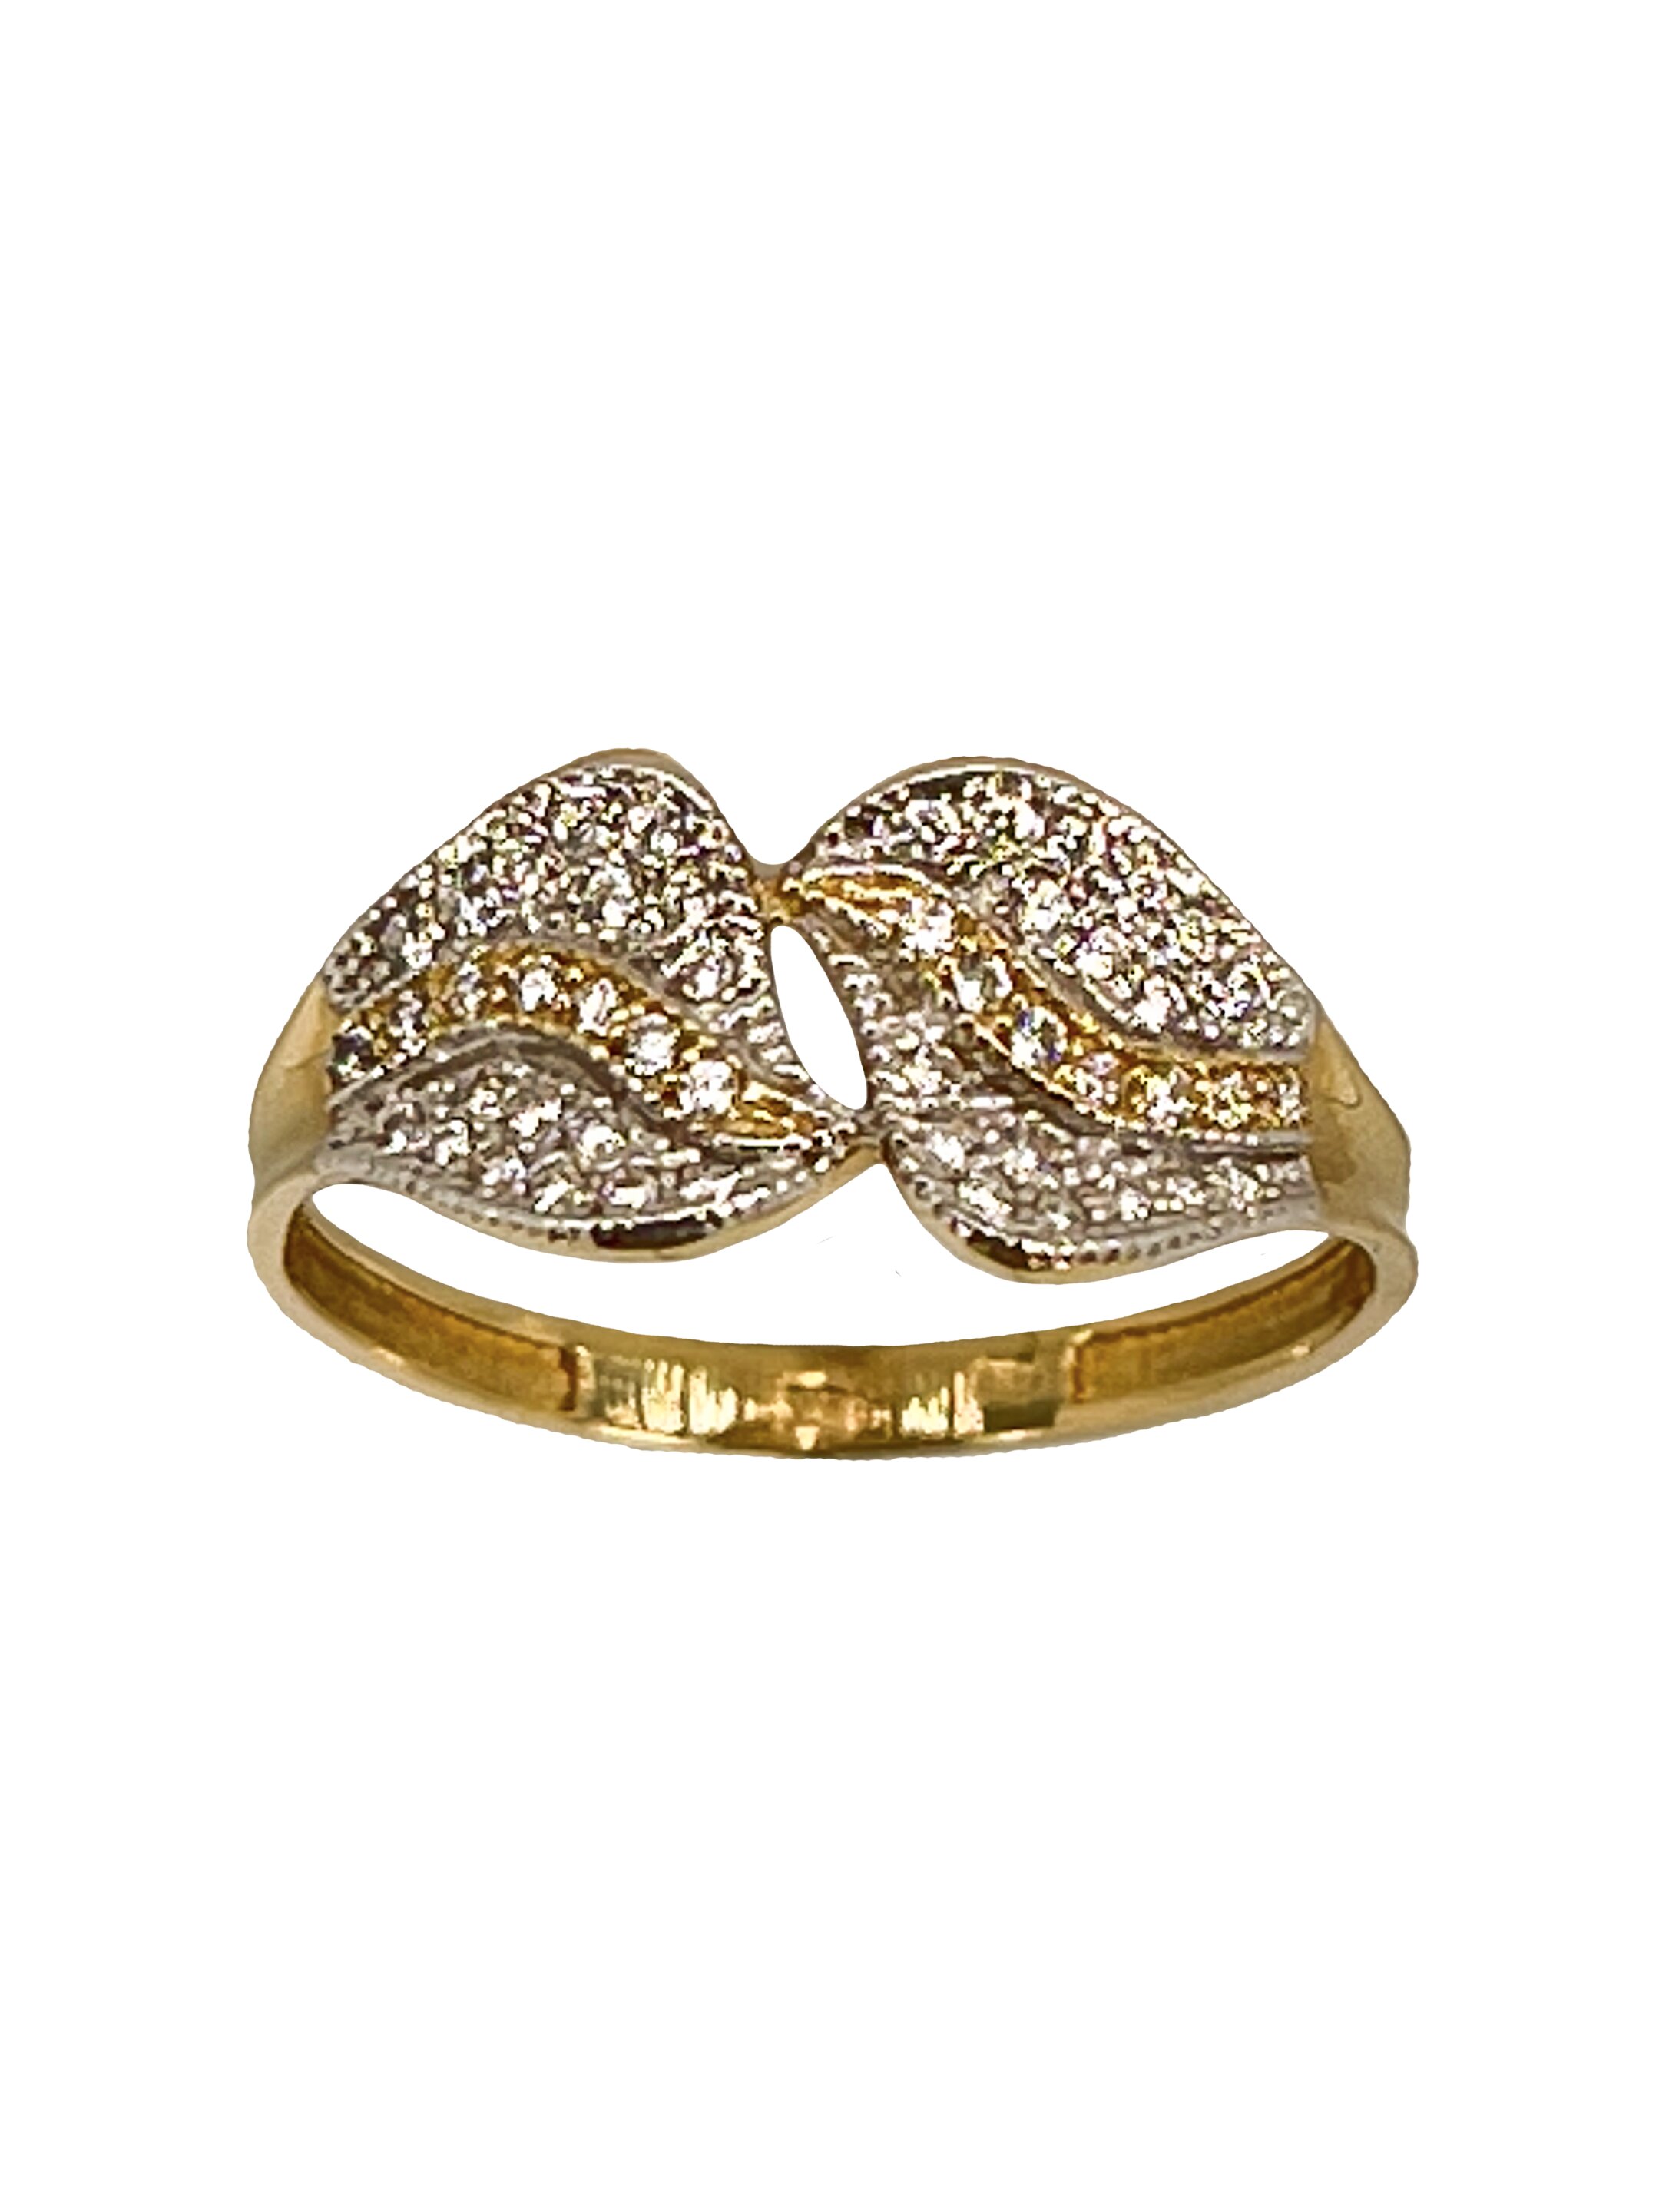 Златен пръстен с циркони